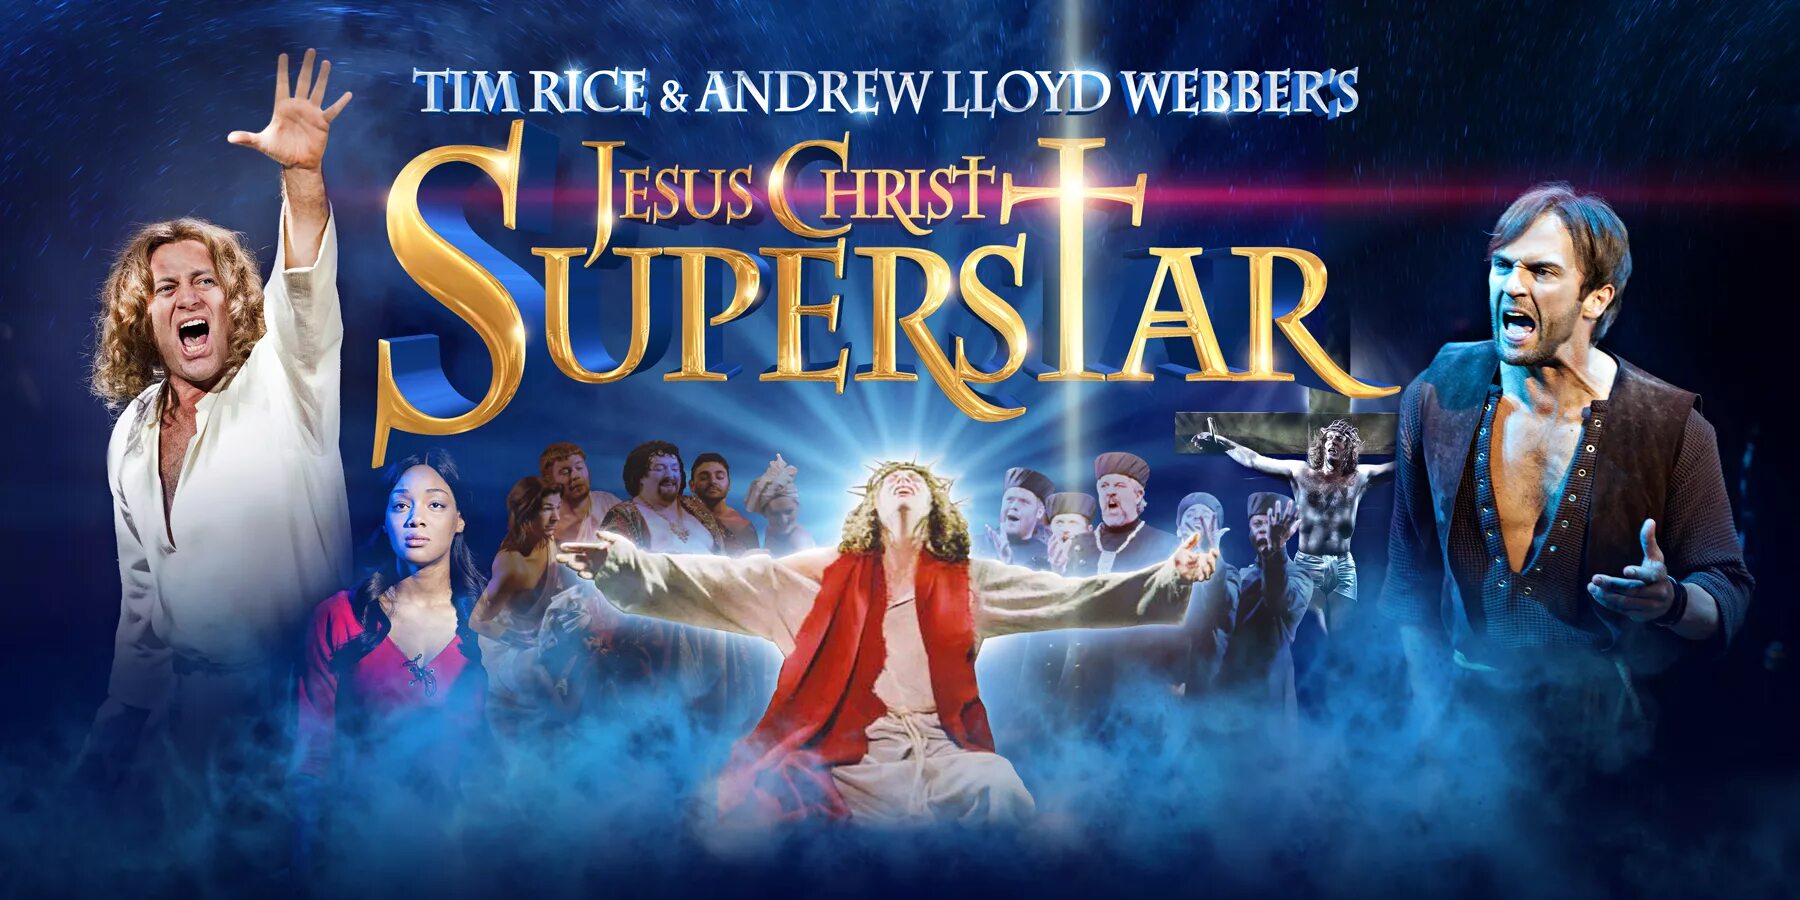 Прослушать иисус христос суперзвезда. Иисус Христос суперзвезда мюзикл 1973. Иисус Христос - суперзвезда Эндрю Ллойд Уэббер. Тим Райс Иисус Христос суперзвезда. Мюзикл Иисус Христос суперзвезда 1971.